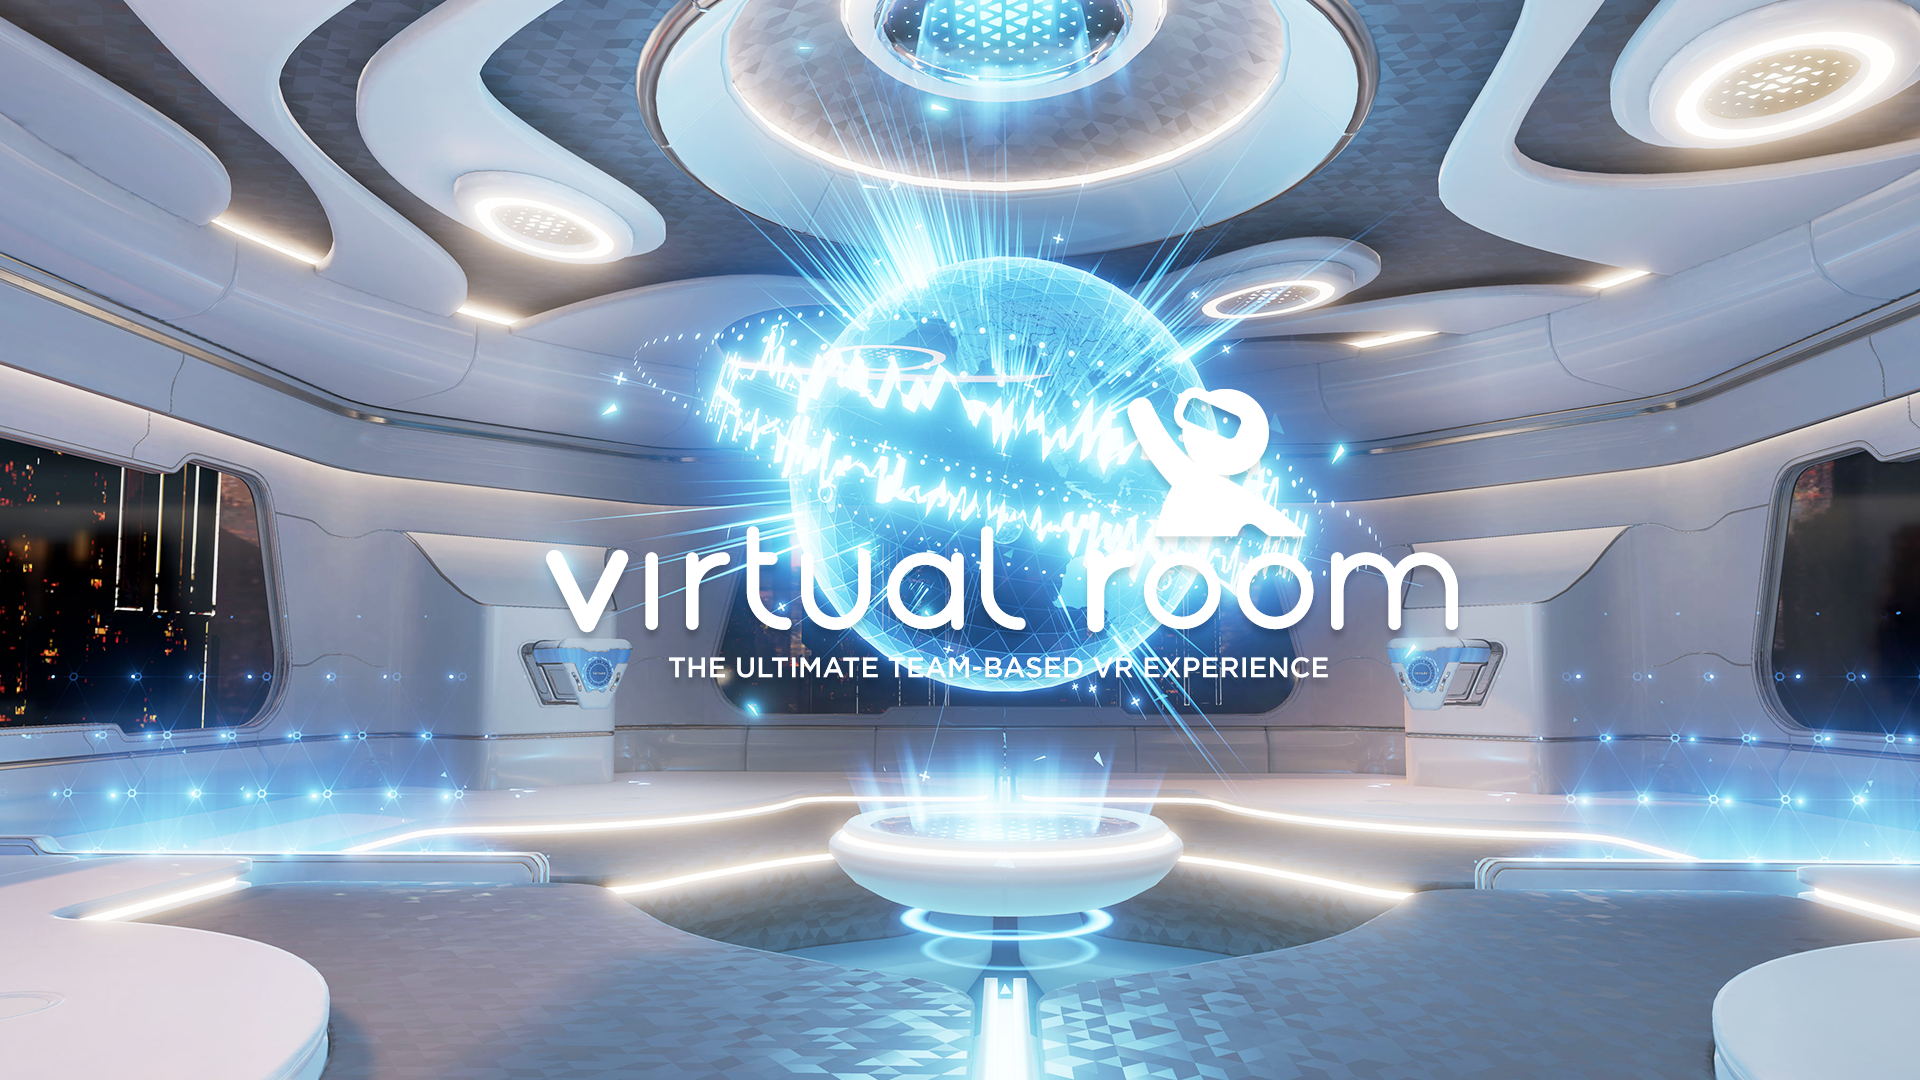 Virtual room